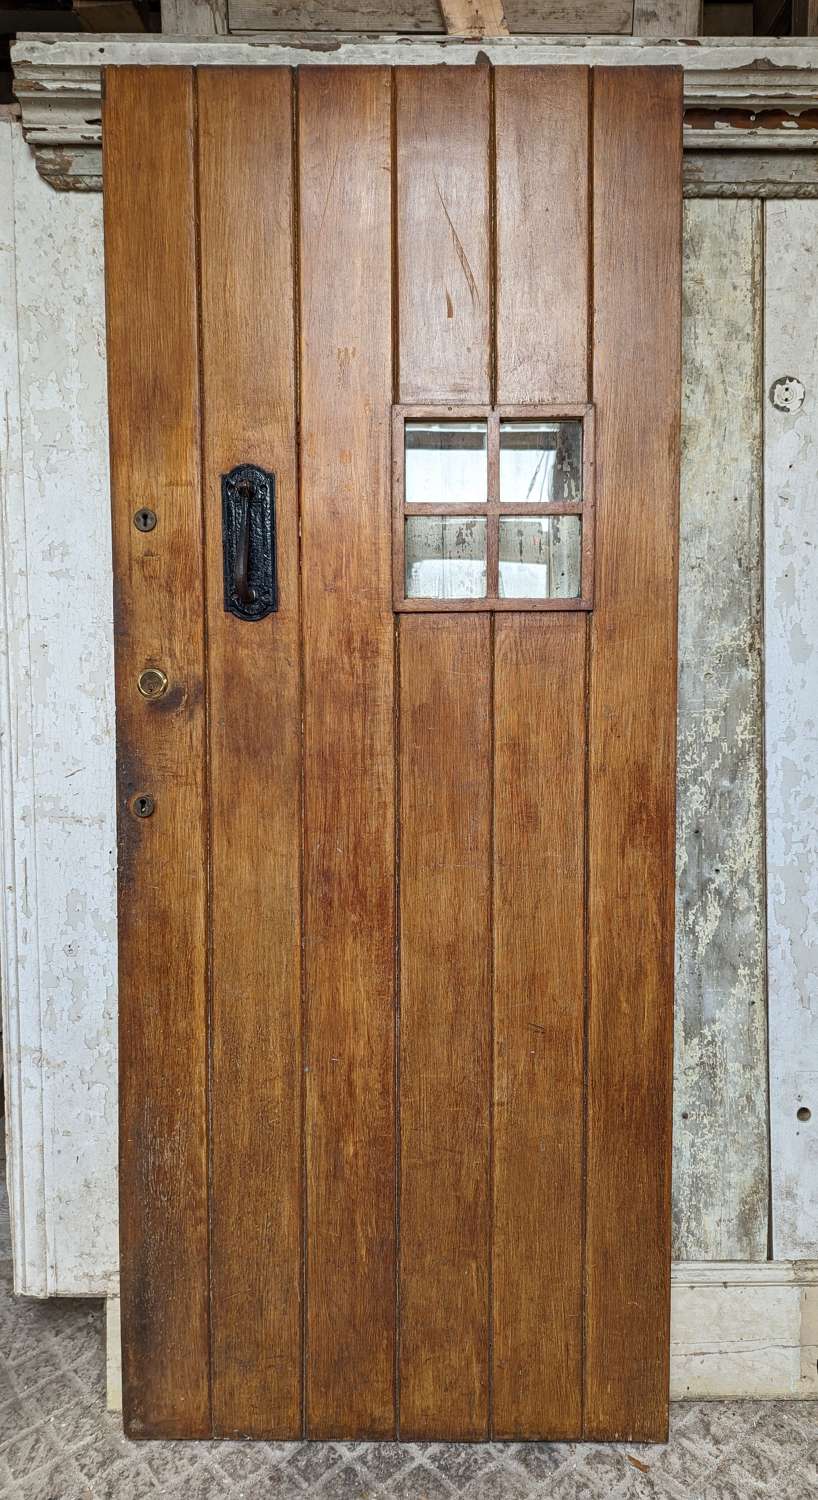 DE0958 RECLAIMED GLAZED OAK FRONT DOOR - COULD BE RESIZED SLIGHTLY